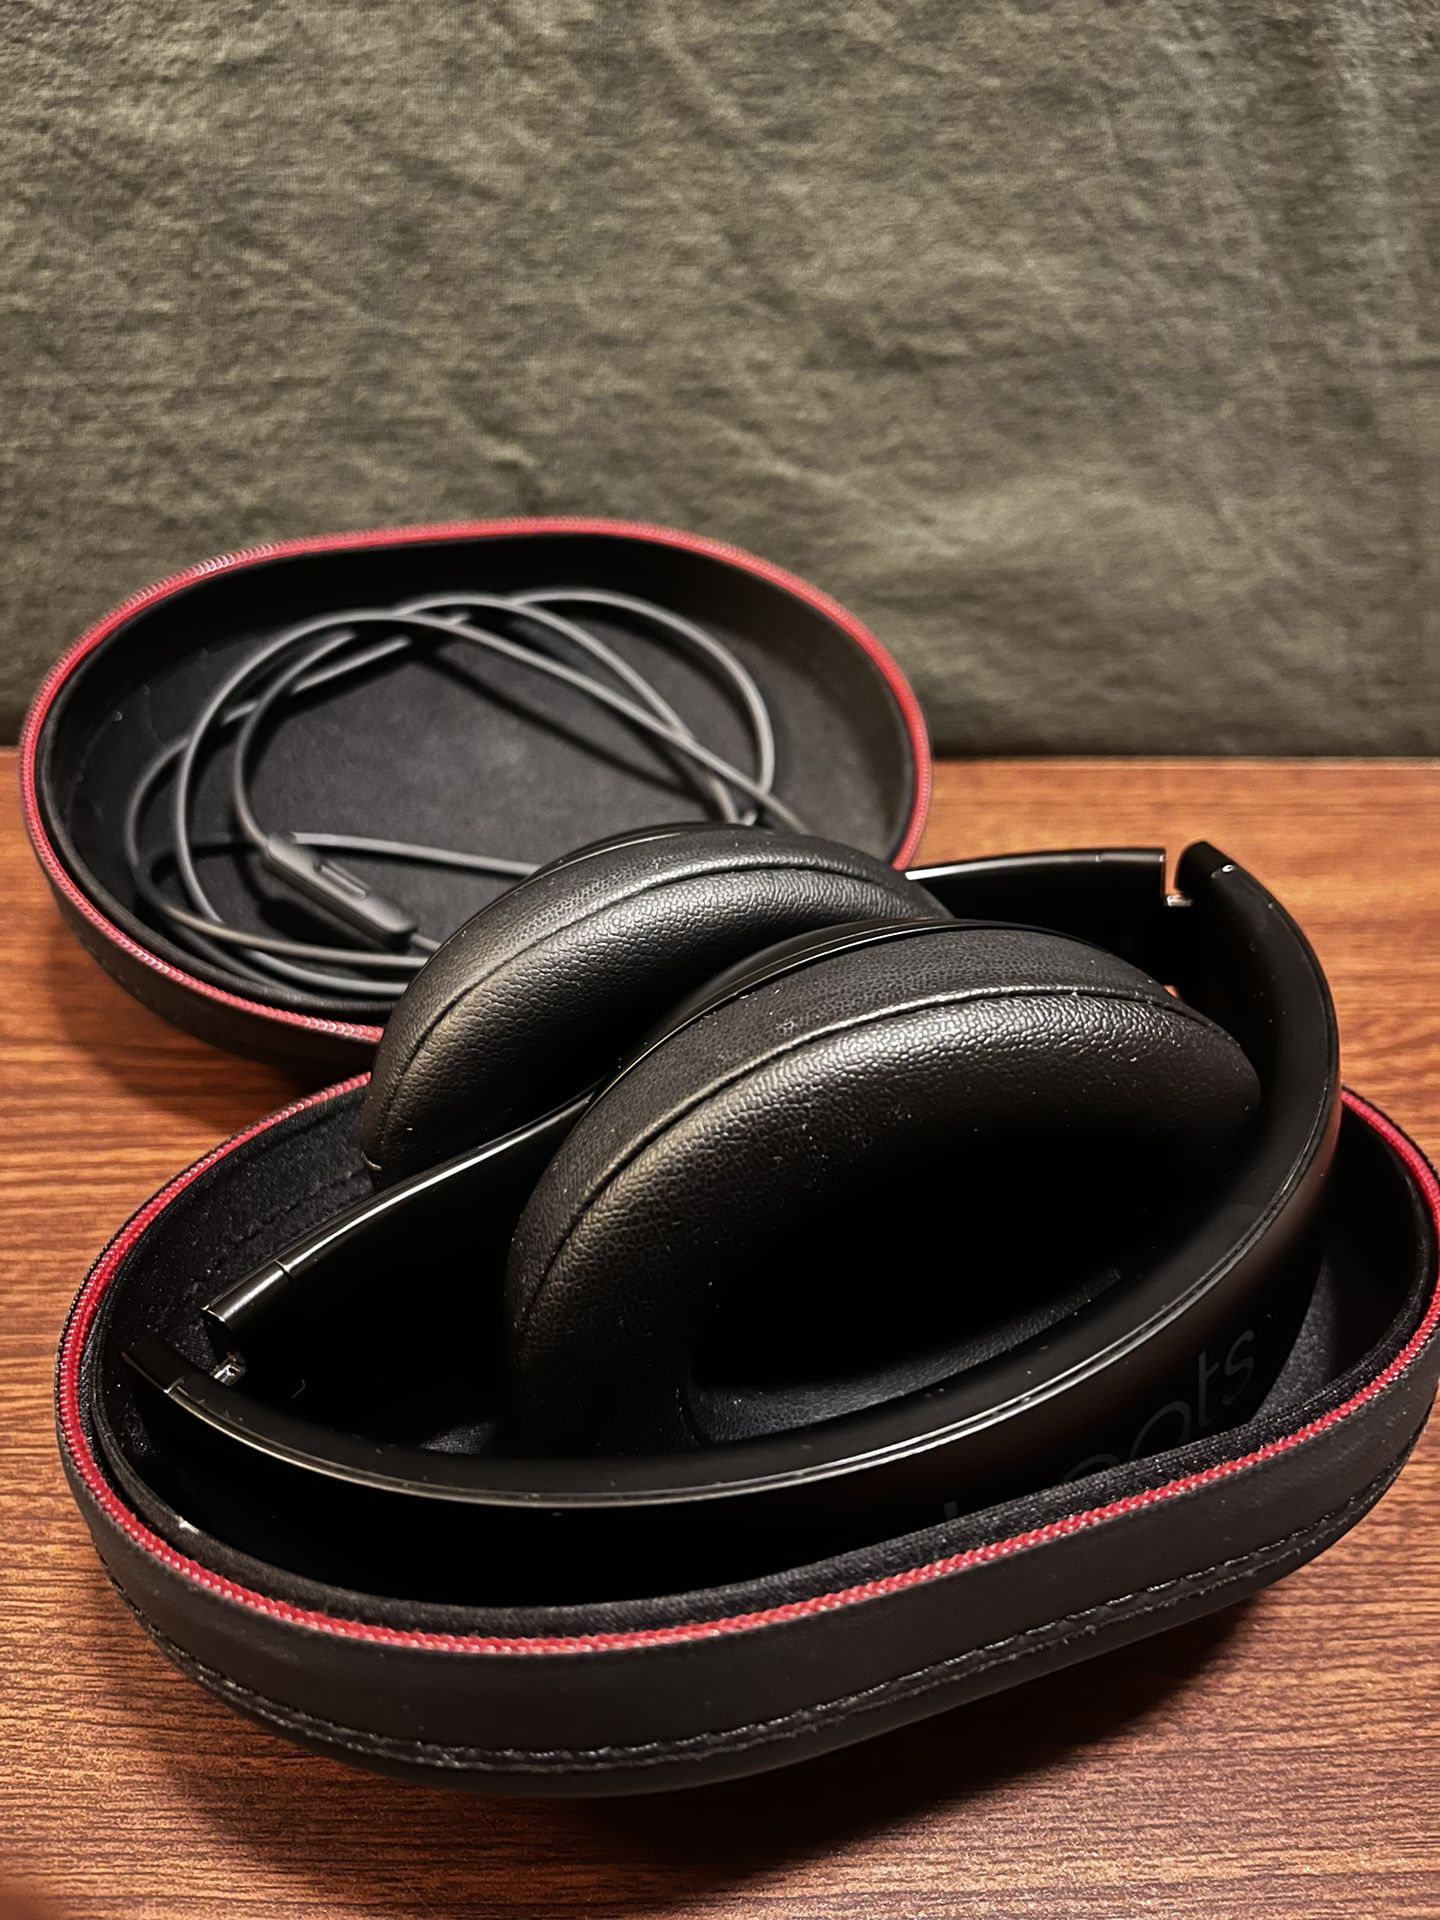 Beats studio pros noise cancelling headphones